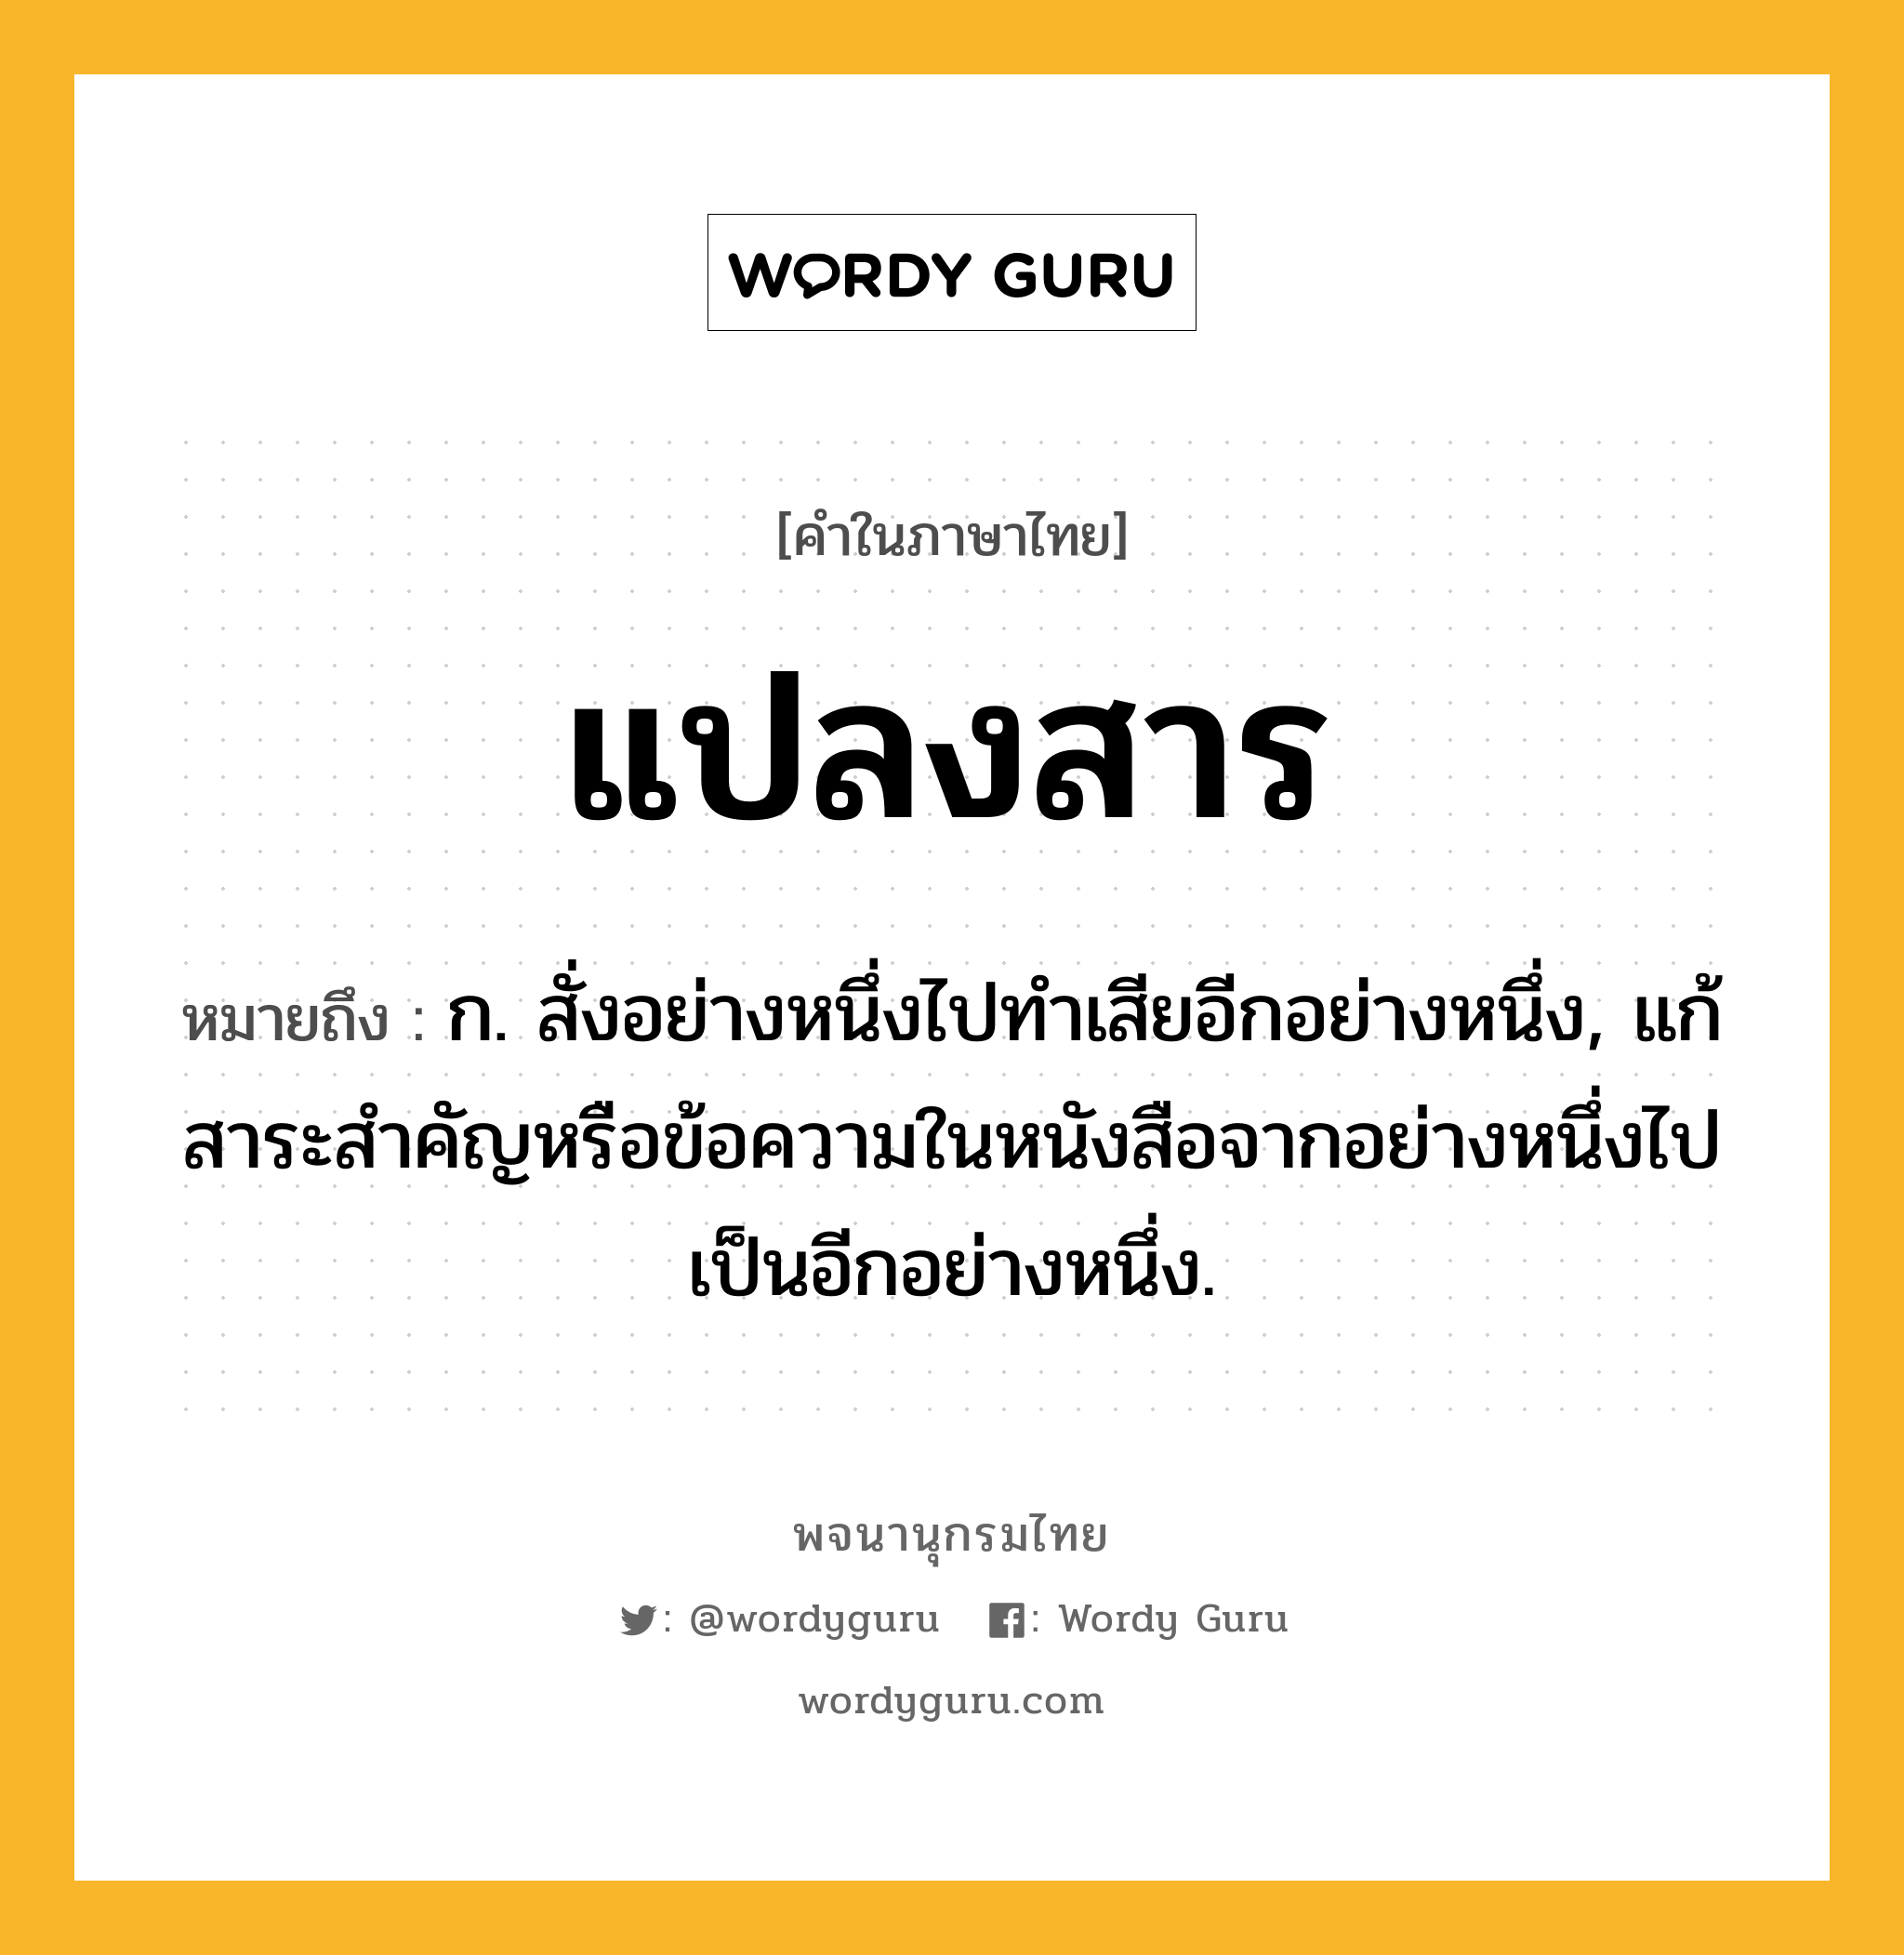 แปลงสาร หมายถึงอะไร?, คำในภาษาไทย แปลงสาร หมายถึง ก. สั่งอย่างหนึ่งไปทำเสียอีกอย่างหนึ่ง, แก้สาระสำคัญหรือข้อความในหนังสือจากอย่างหนึ่งไปเป็นอีกอย่างหนึ่ง.